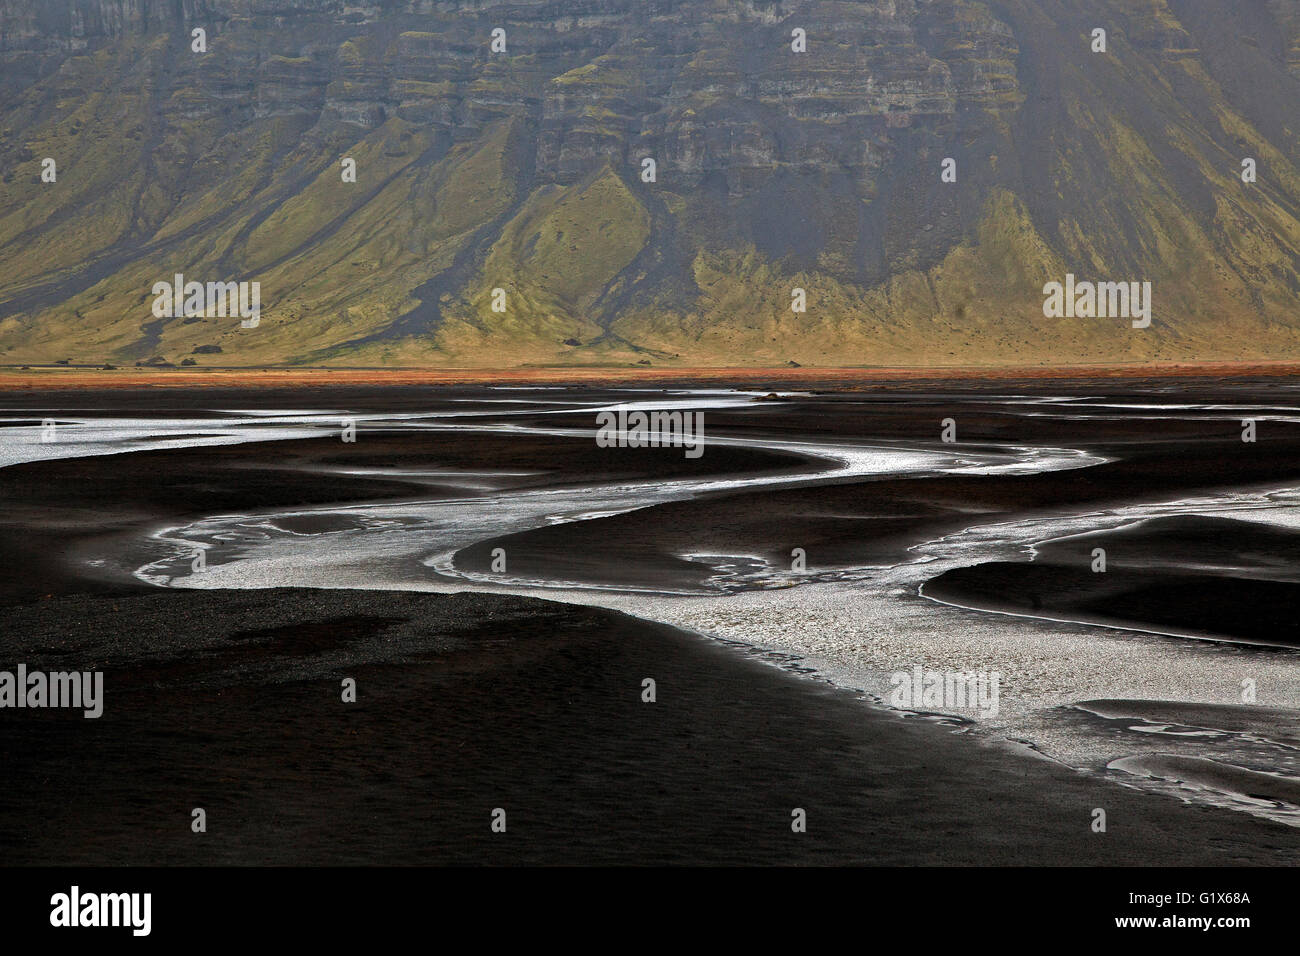 Landschaft mit Gewässer durch vulkanischen Sand, Nupsstadur oder Núpsstaður, Region Süd, Island Stockfoto